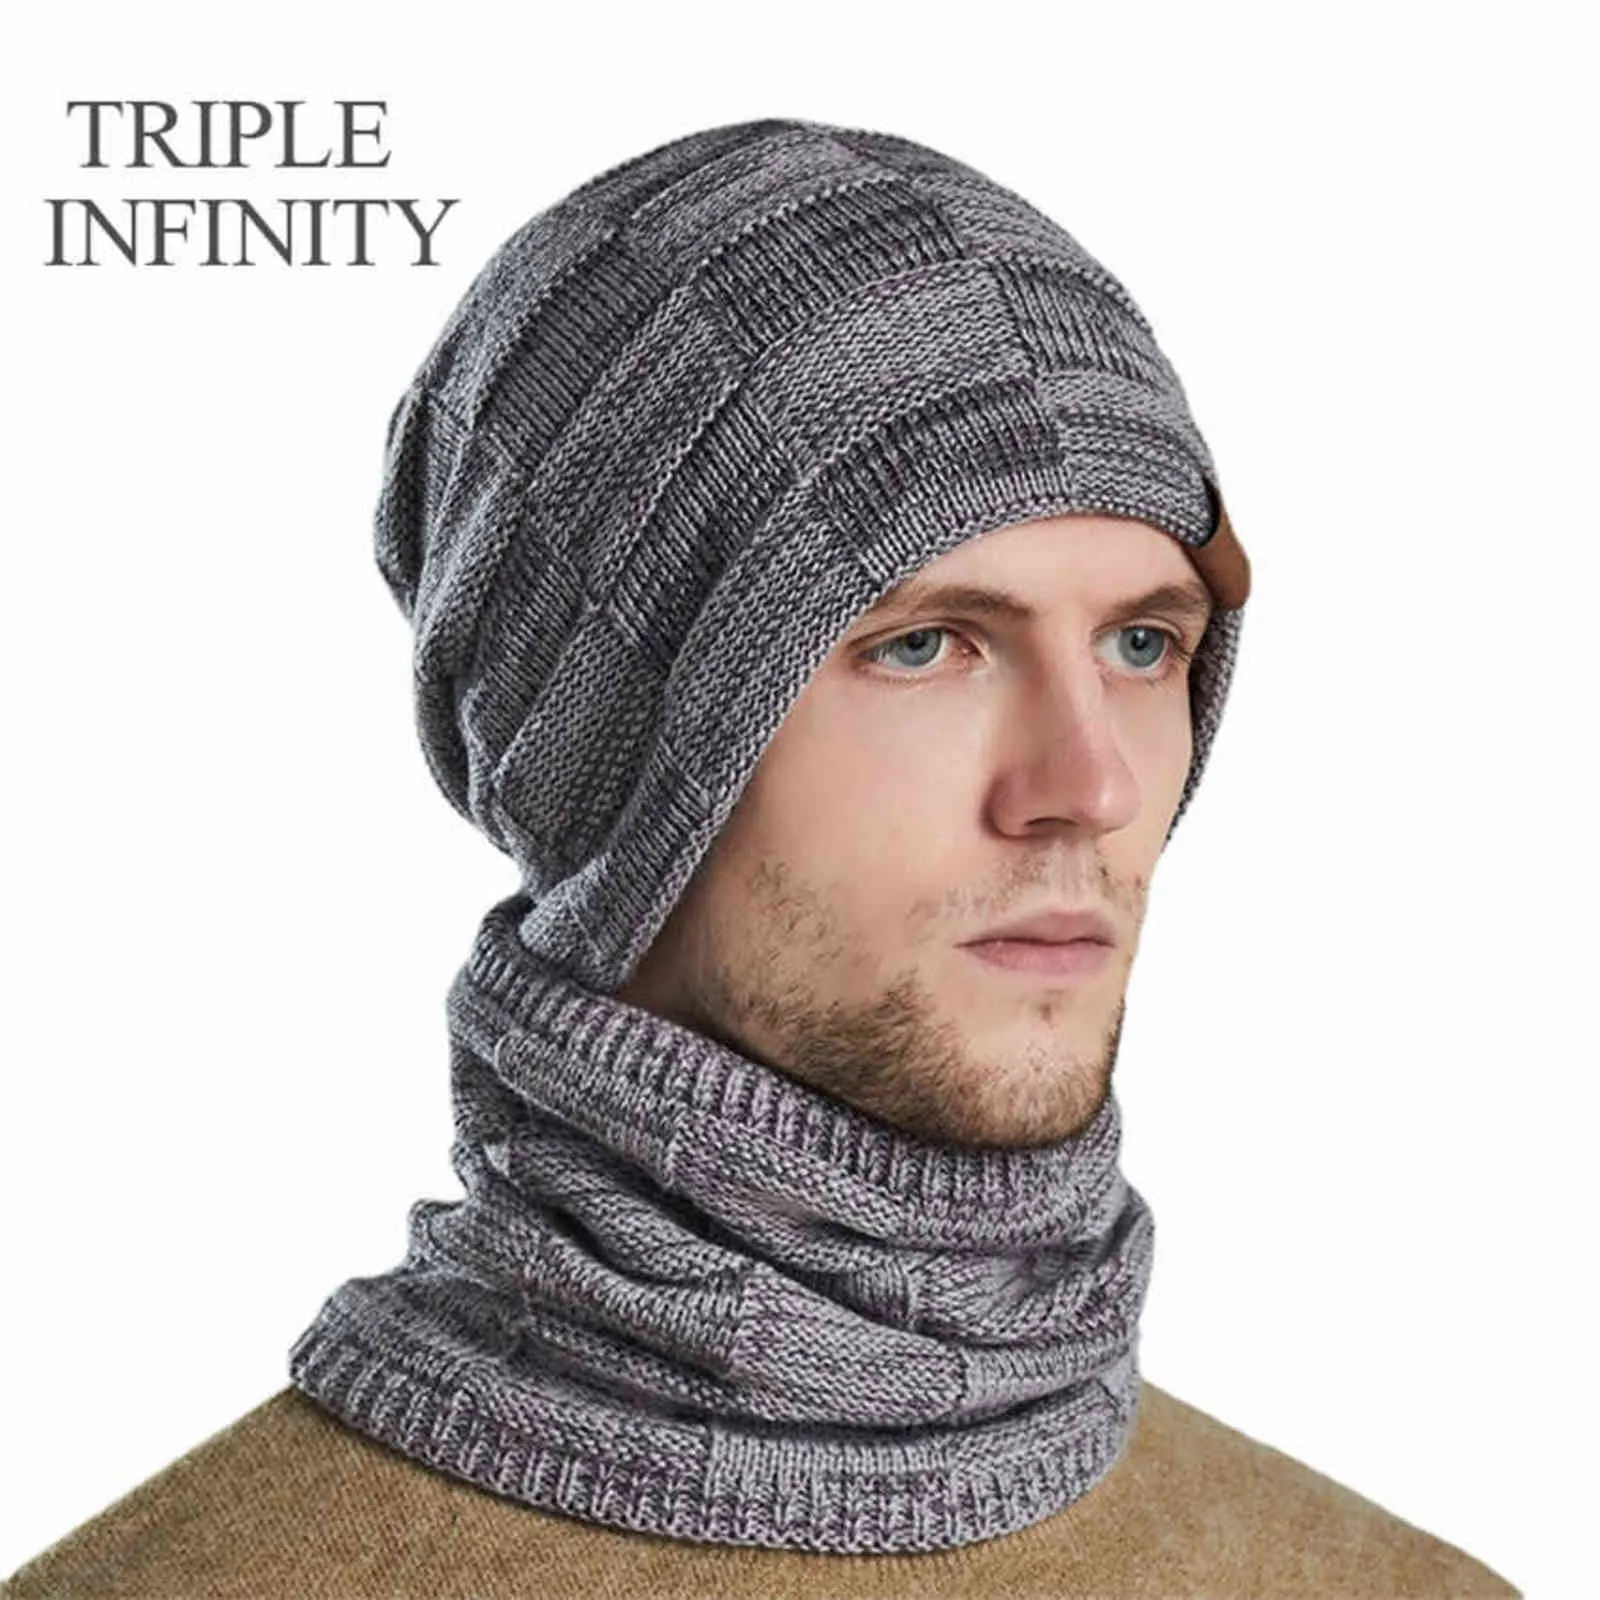 Drievoudige Infinity Winter Mannen Gebreide Hoed Mutsen Sjaal Warm Suits Bonnet Dikke Comfortabele Skiën Rijden Mannelijke Cap Gift voor Liefhebbers Y21111